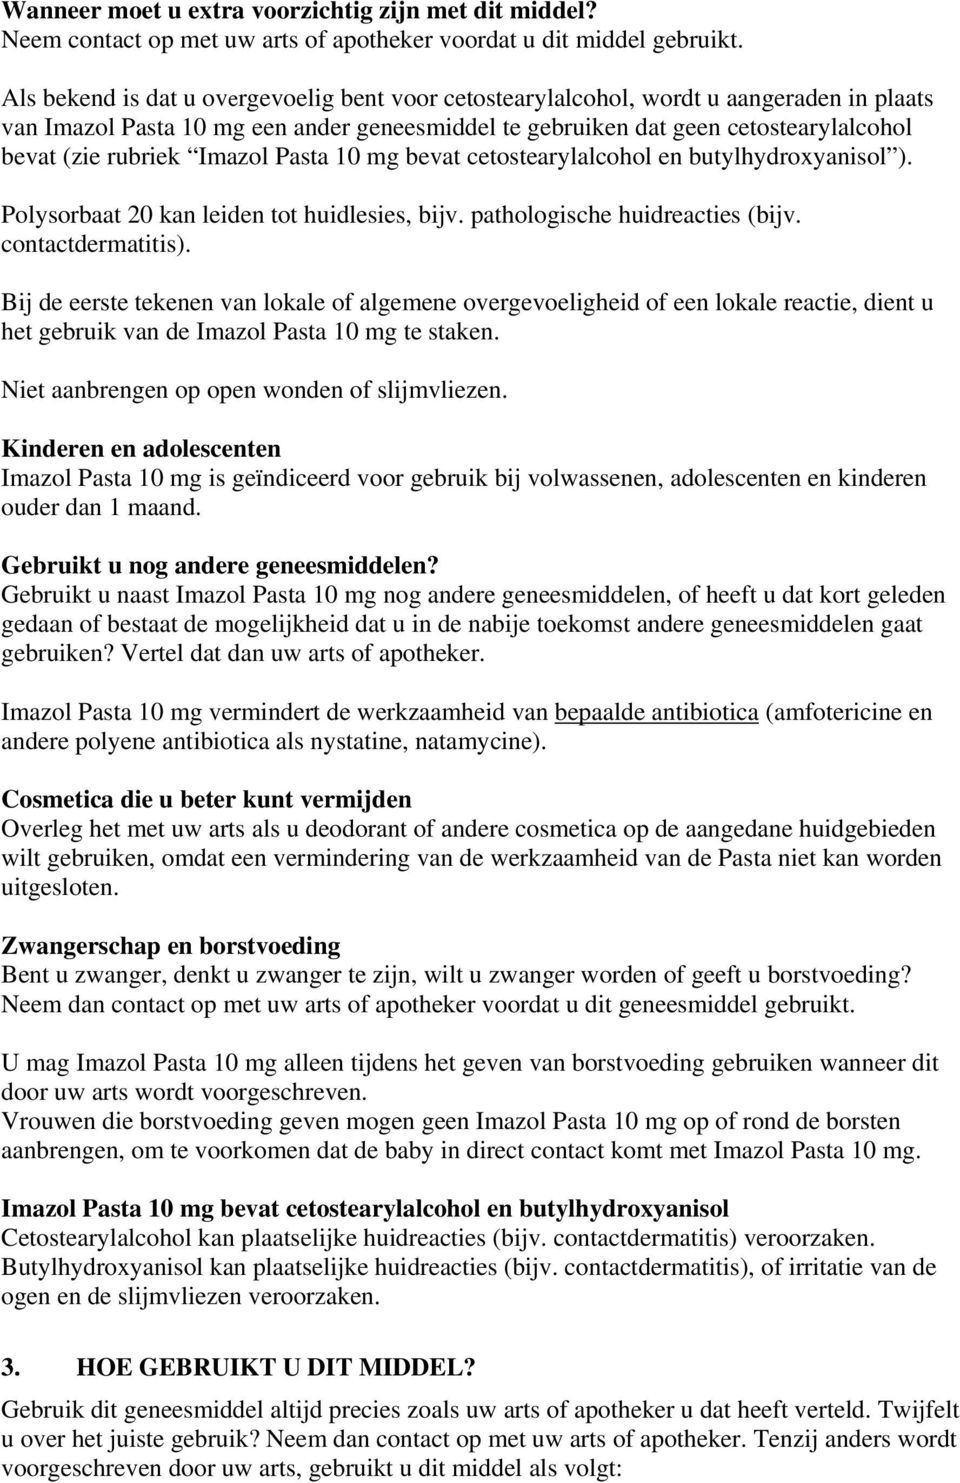 Imazol Pasta 10 mg bevat cetostearylalcohol en butylhydroxyanisol ). Polysorbaat 20 kan leiden tot huidlesies, bijv. pathologische huidreacties (bijv. contactdermatitis).